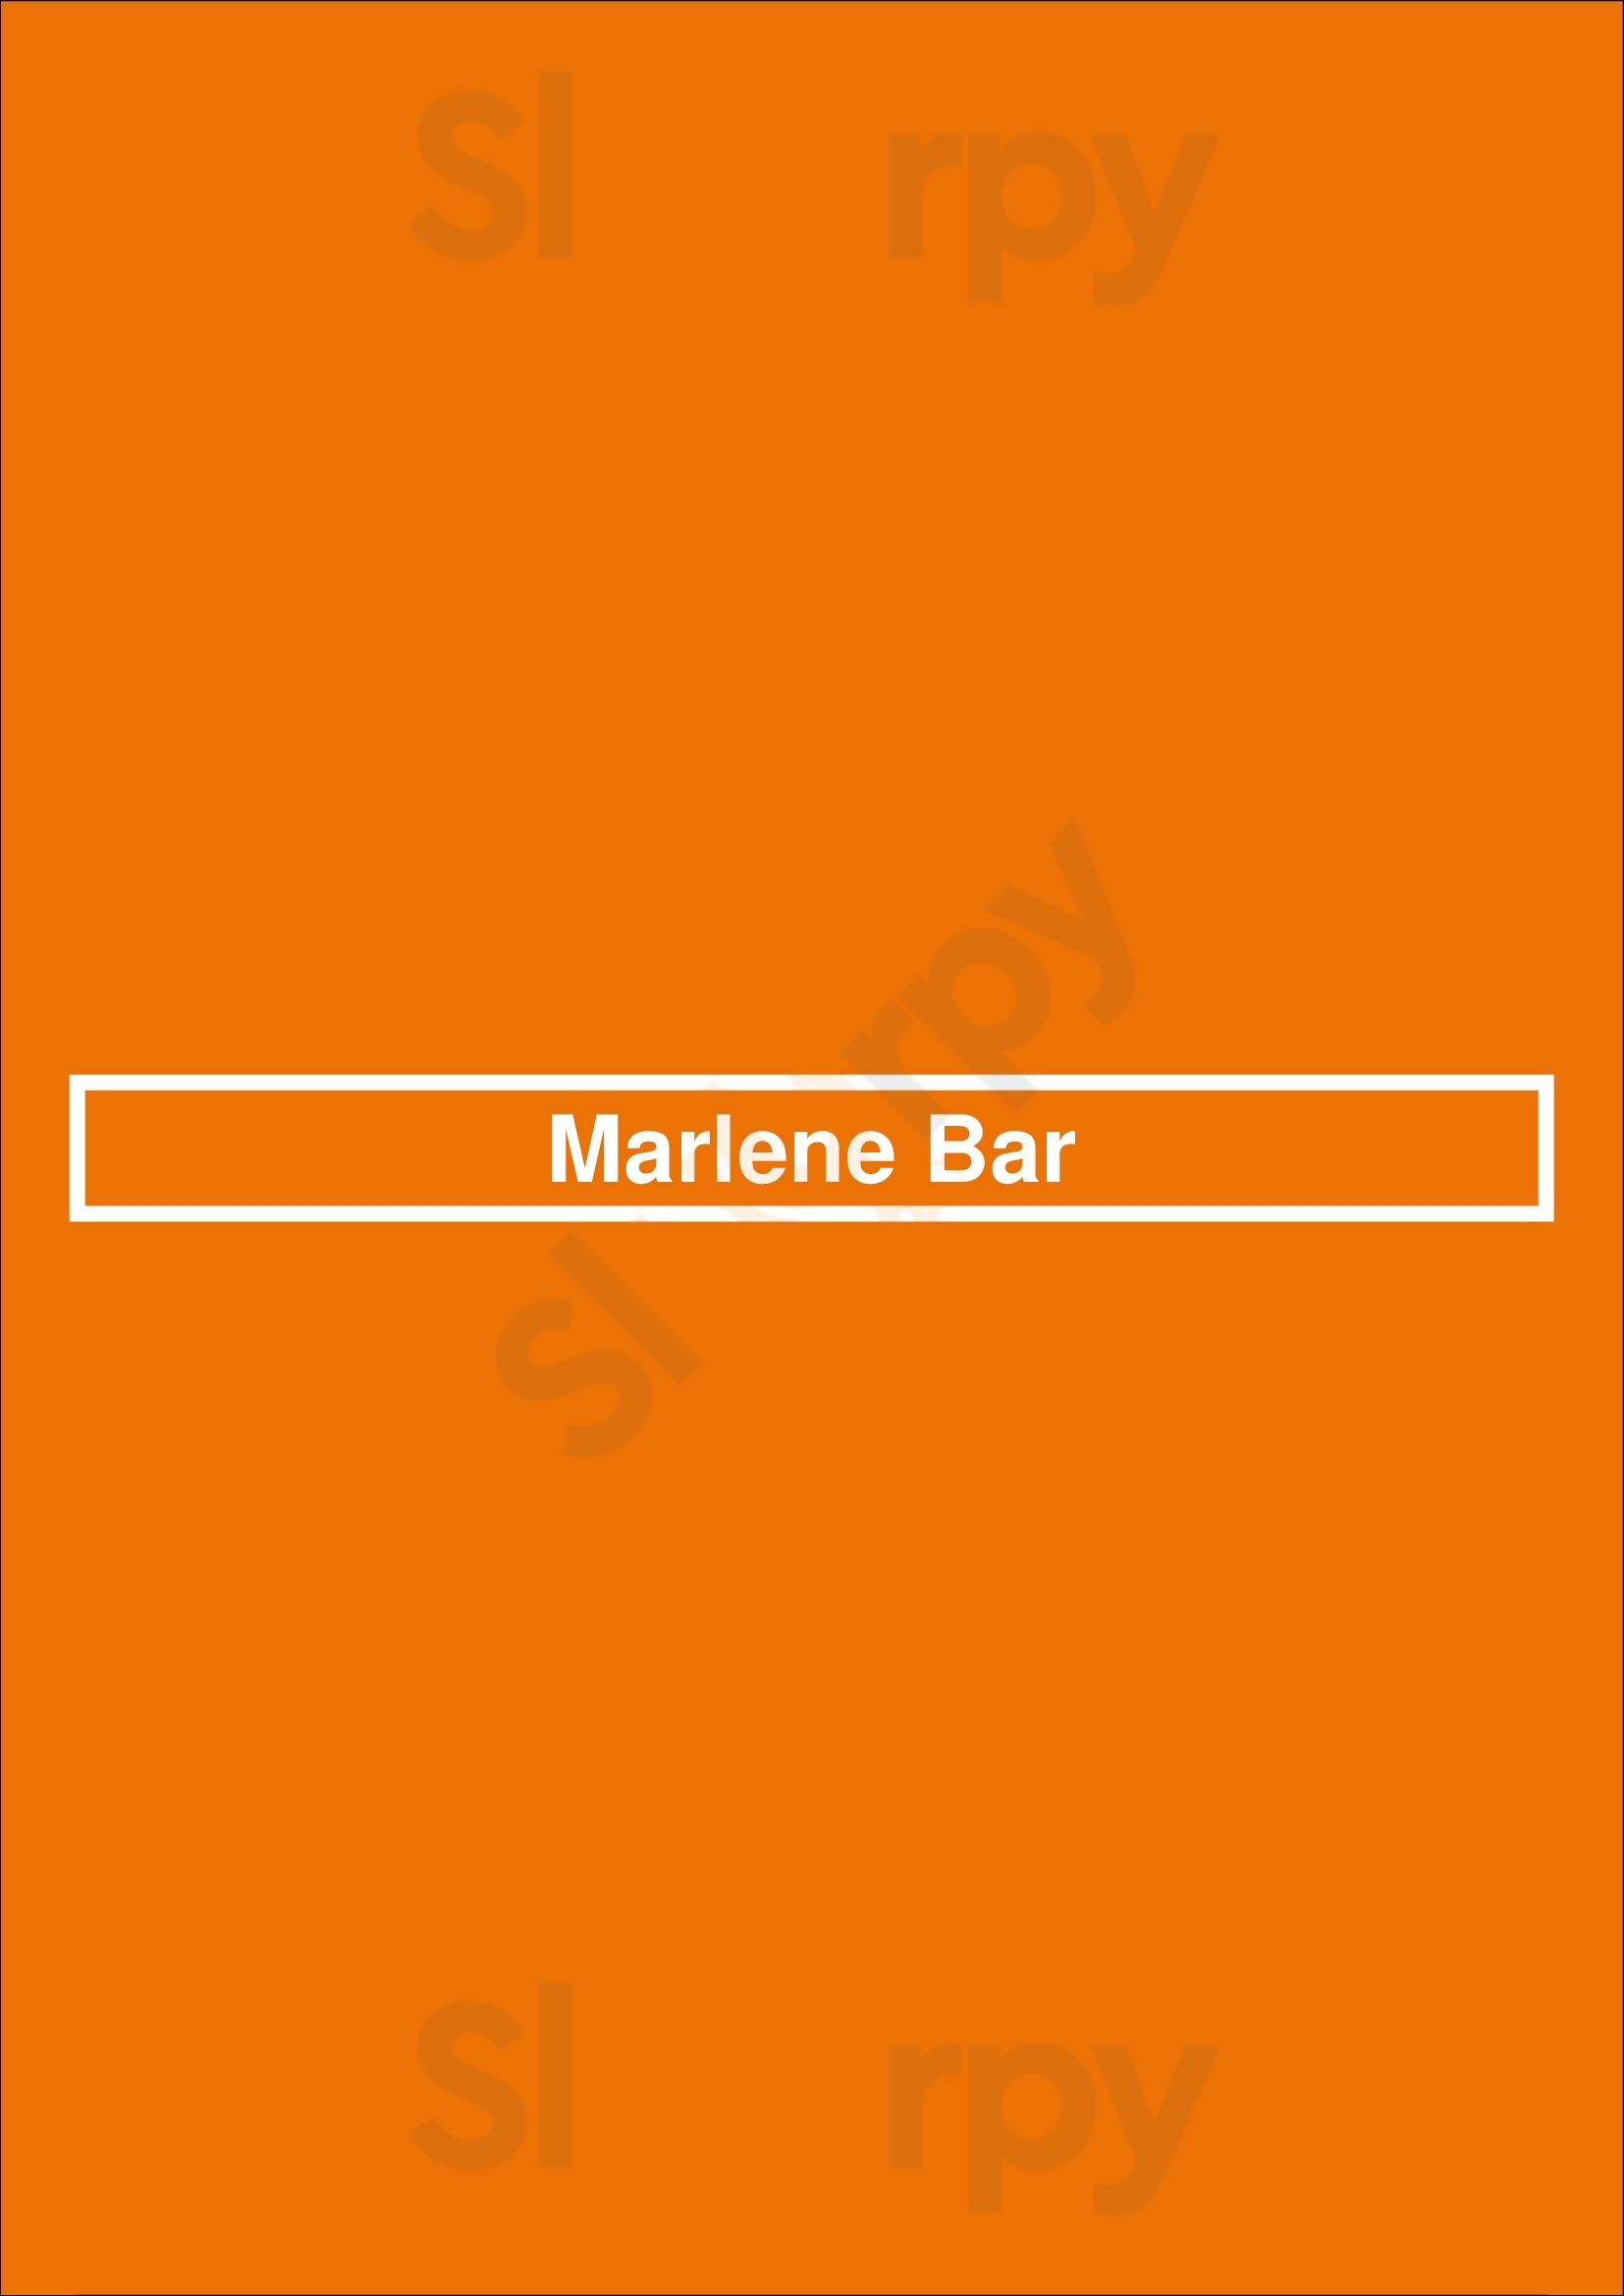 Marlene Bar Berlin Menu - 1